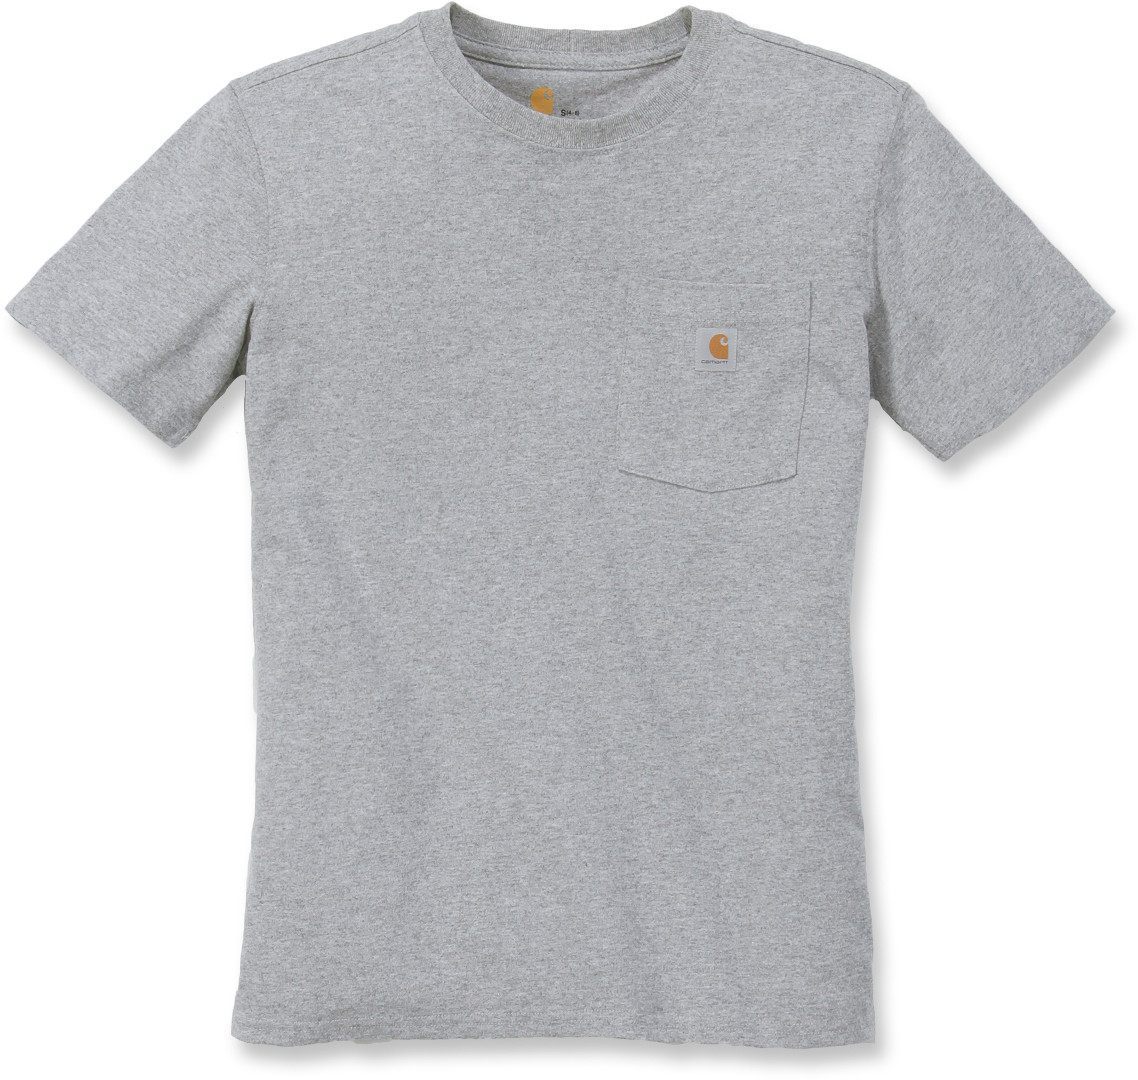 Carhartt Workwear Pocket Camiseta para mujeres - Gris (XS)